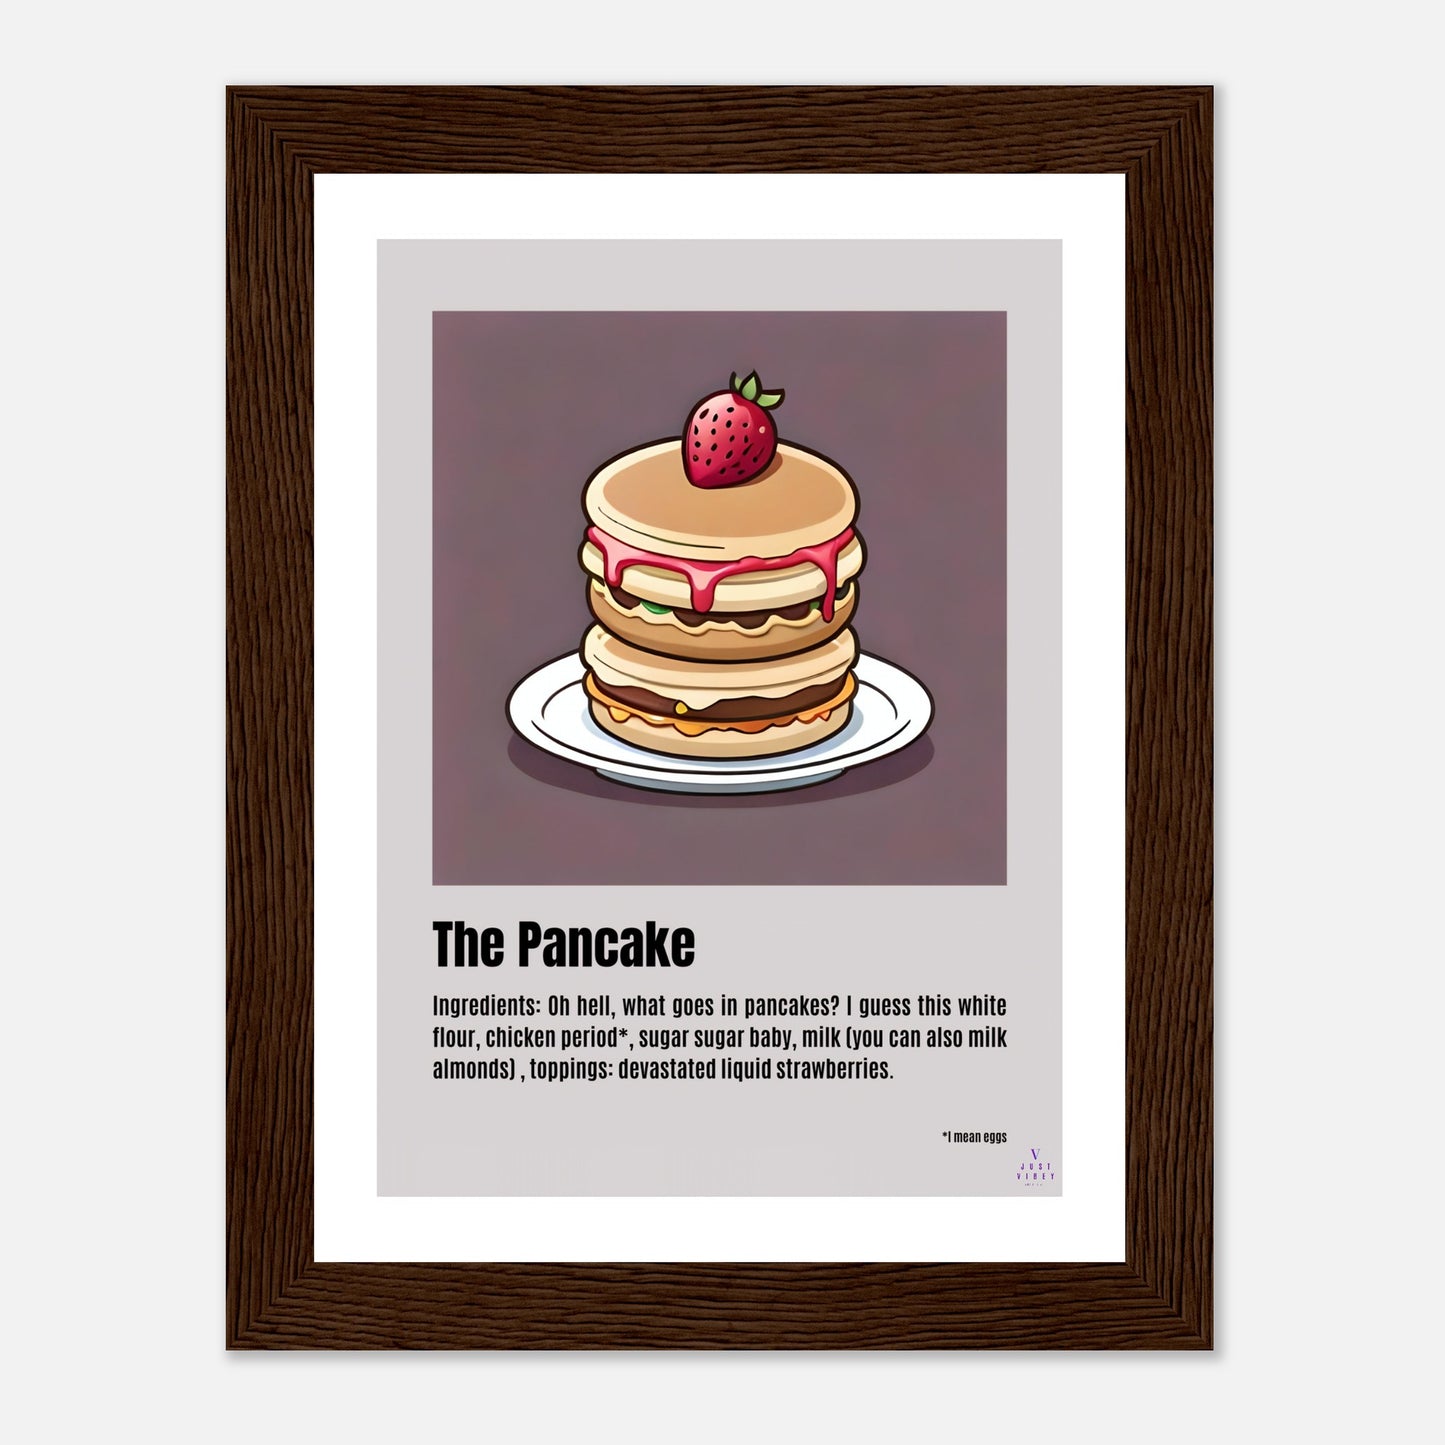 The Pancake.